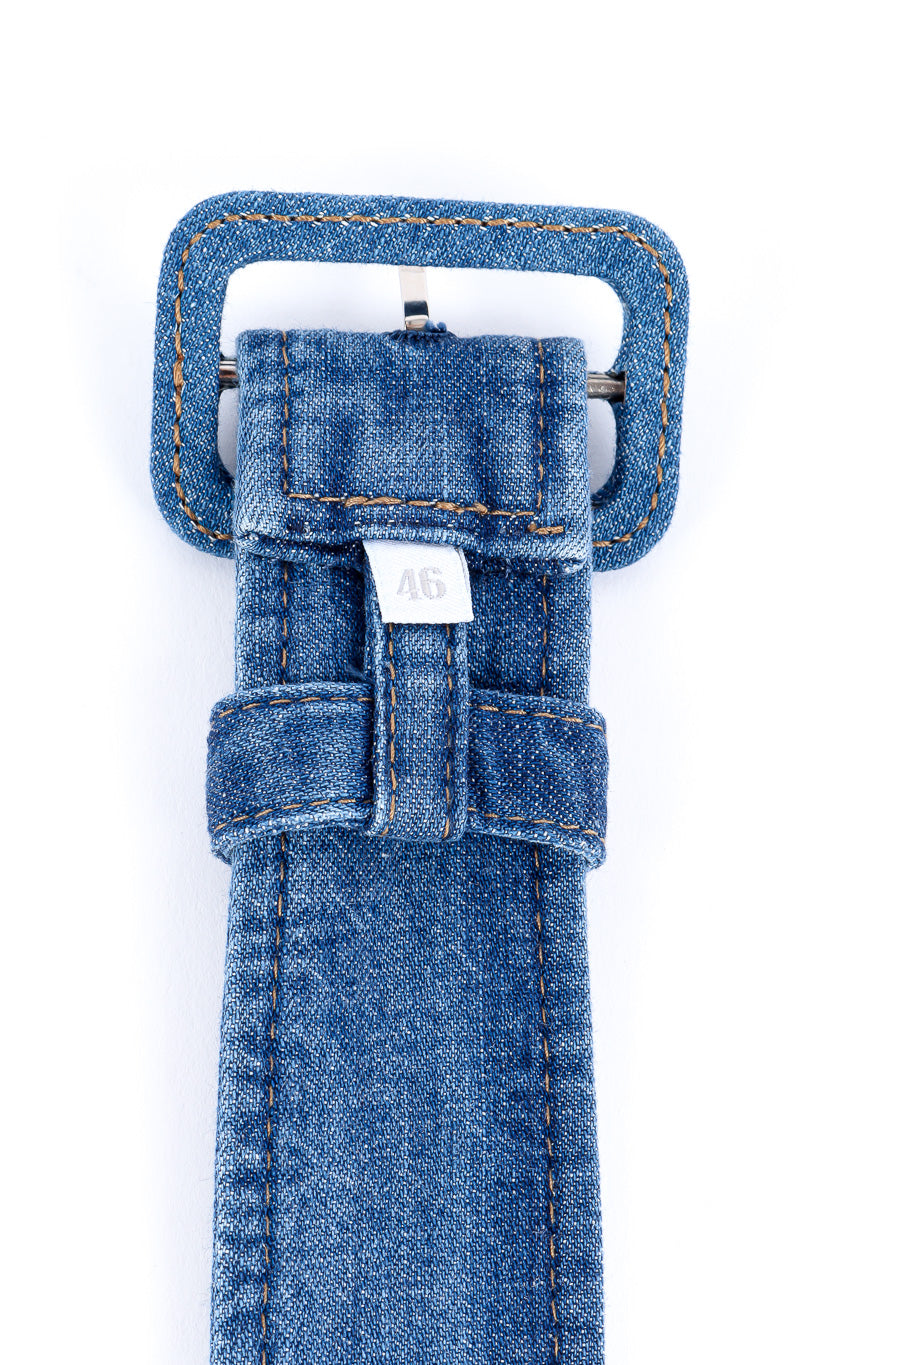 Prada denim peasant skirt belt close-up @recessla